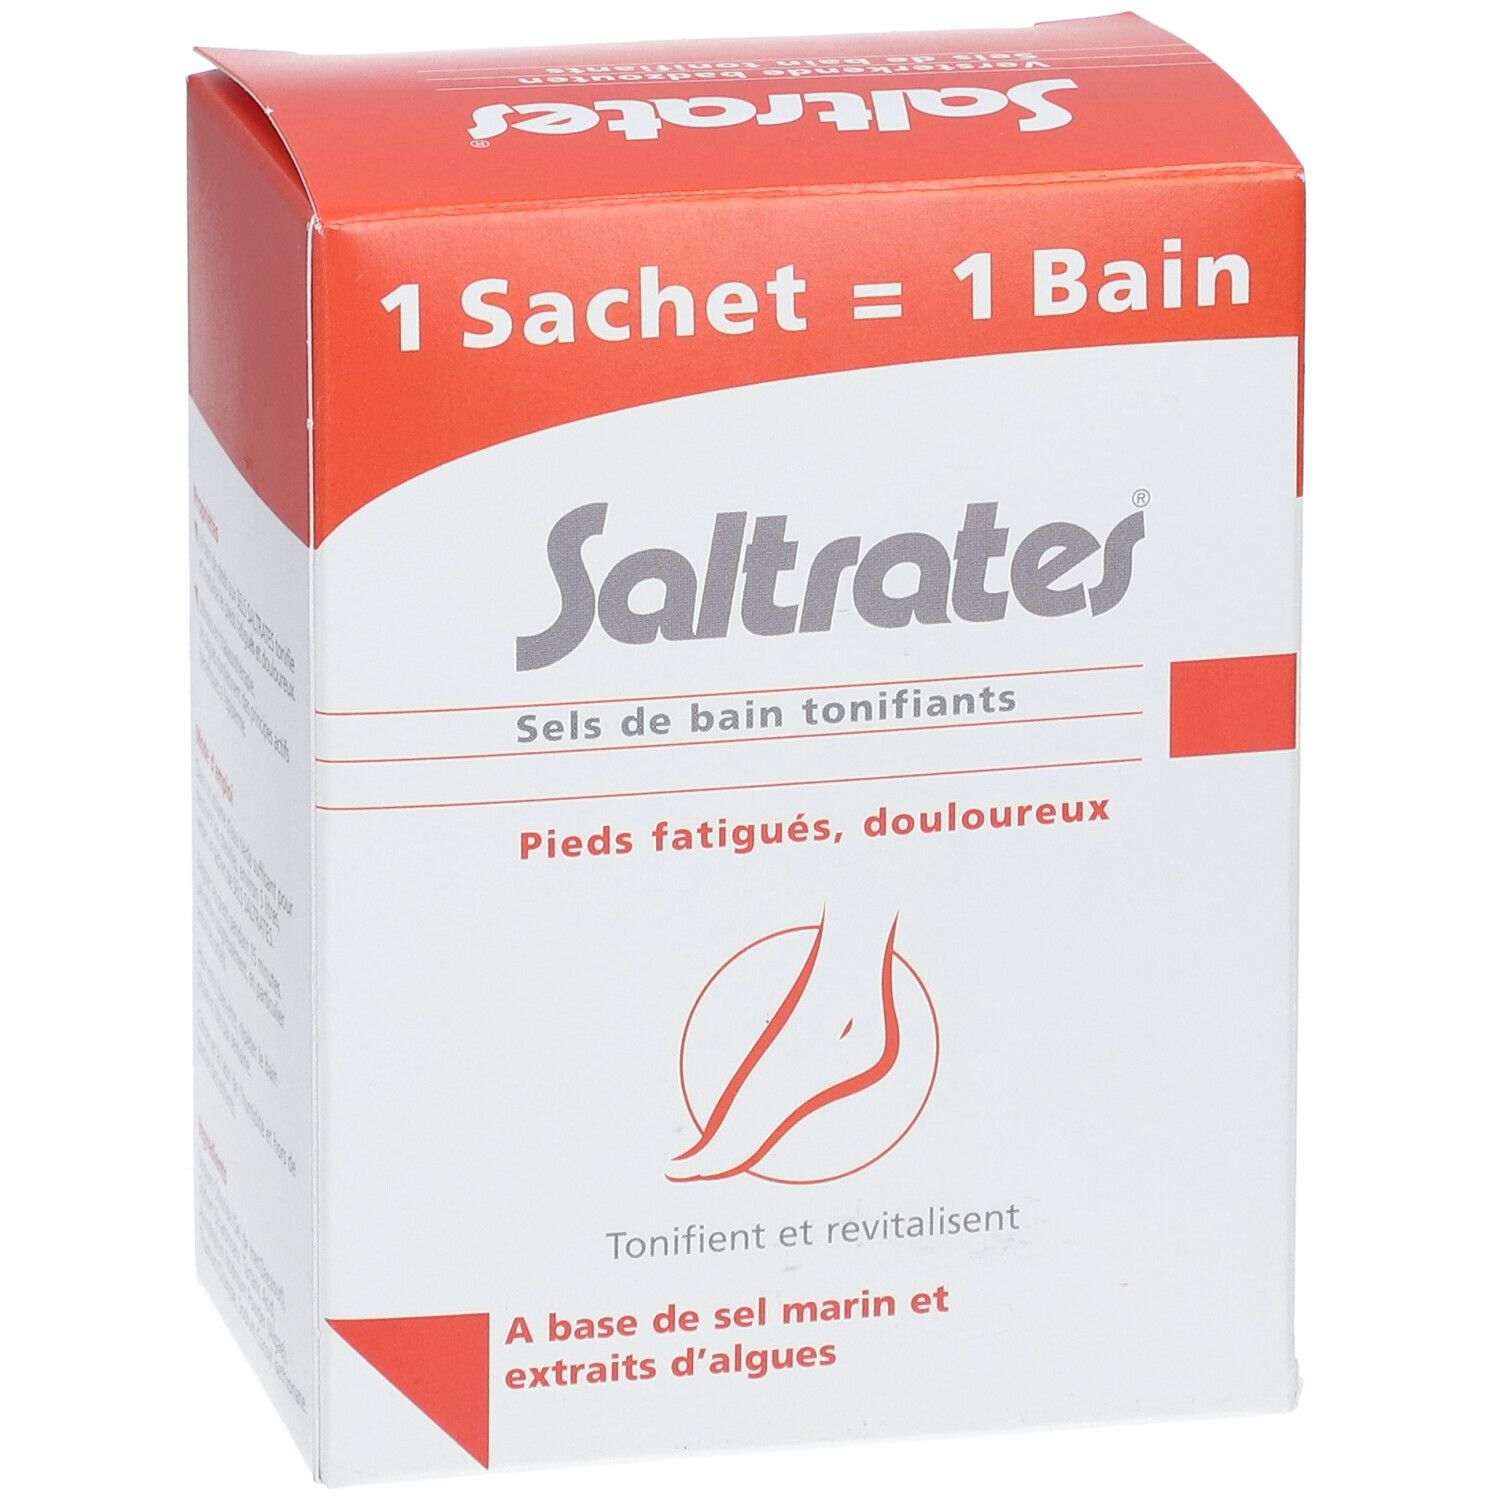 Saltrates® Sels de bain tonifiants Pieds fatigués & douloureux